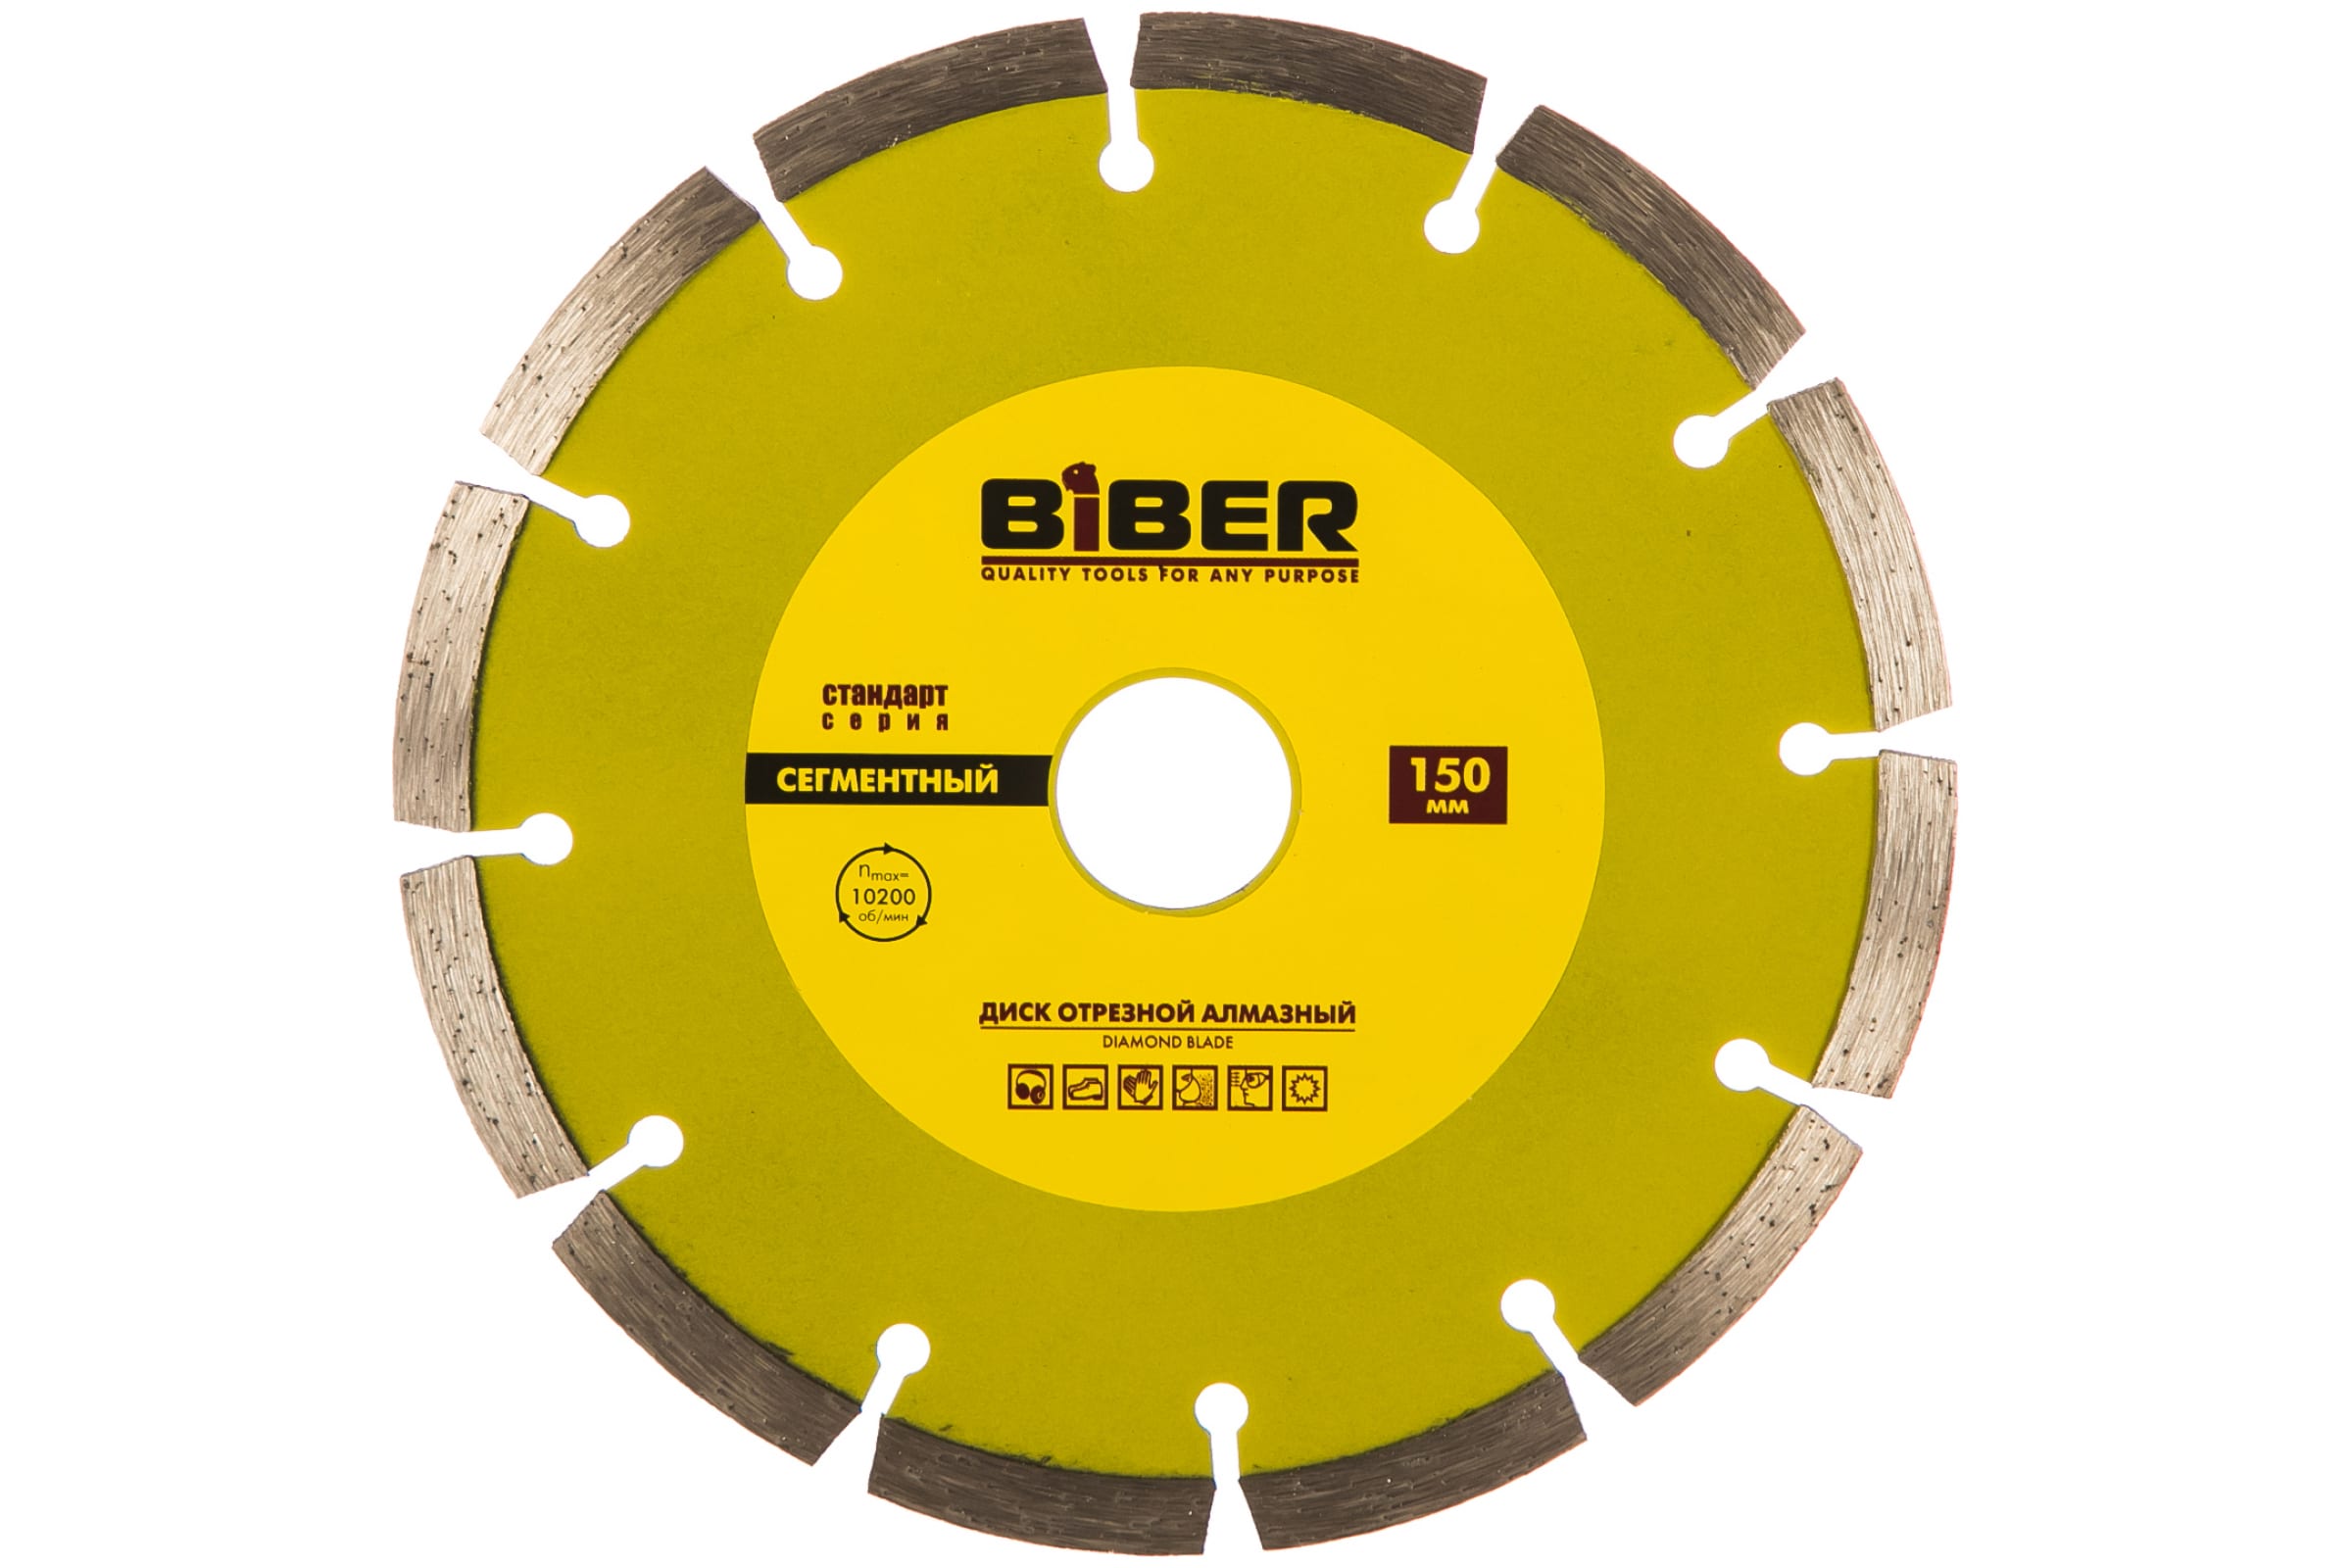 Biber Диск алмазный сегментный Стандарт 150мм 70214 тов-173216 biber диск алмазный сегментный стандарт 230мм 70216 тов 039542